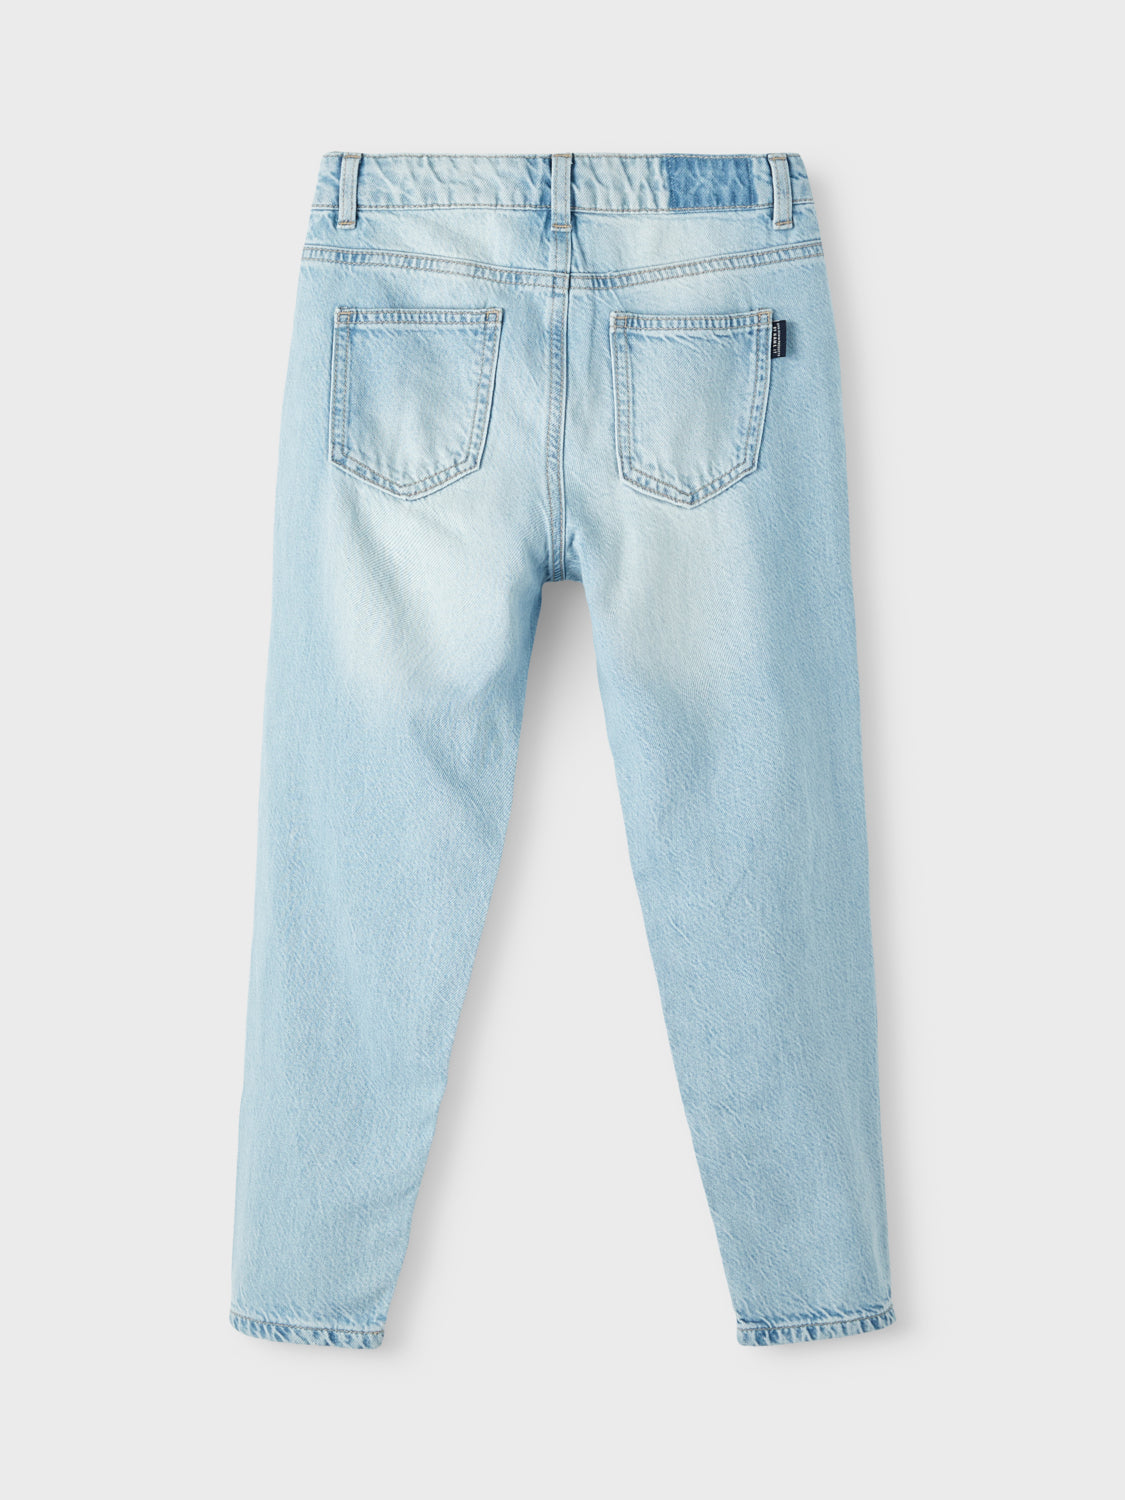 NKMBEN Jeans - Light Blue Denim